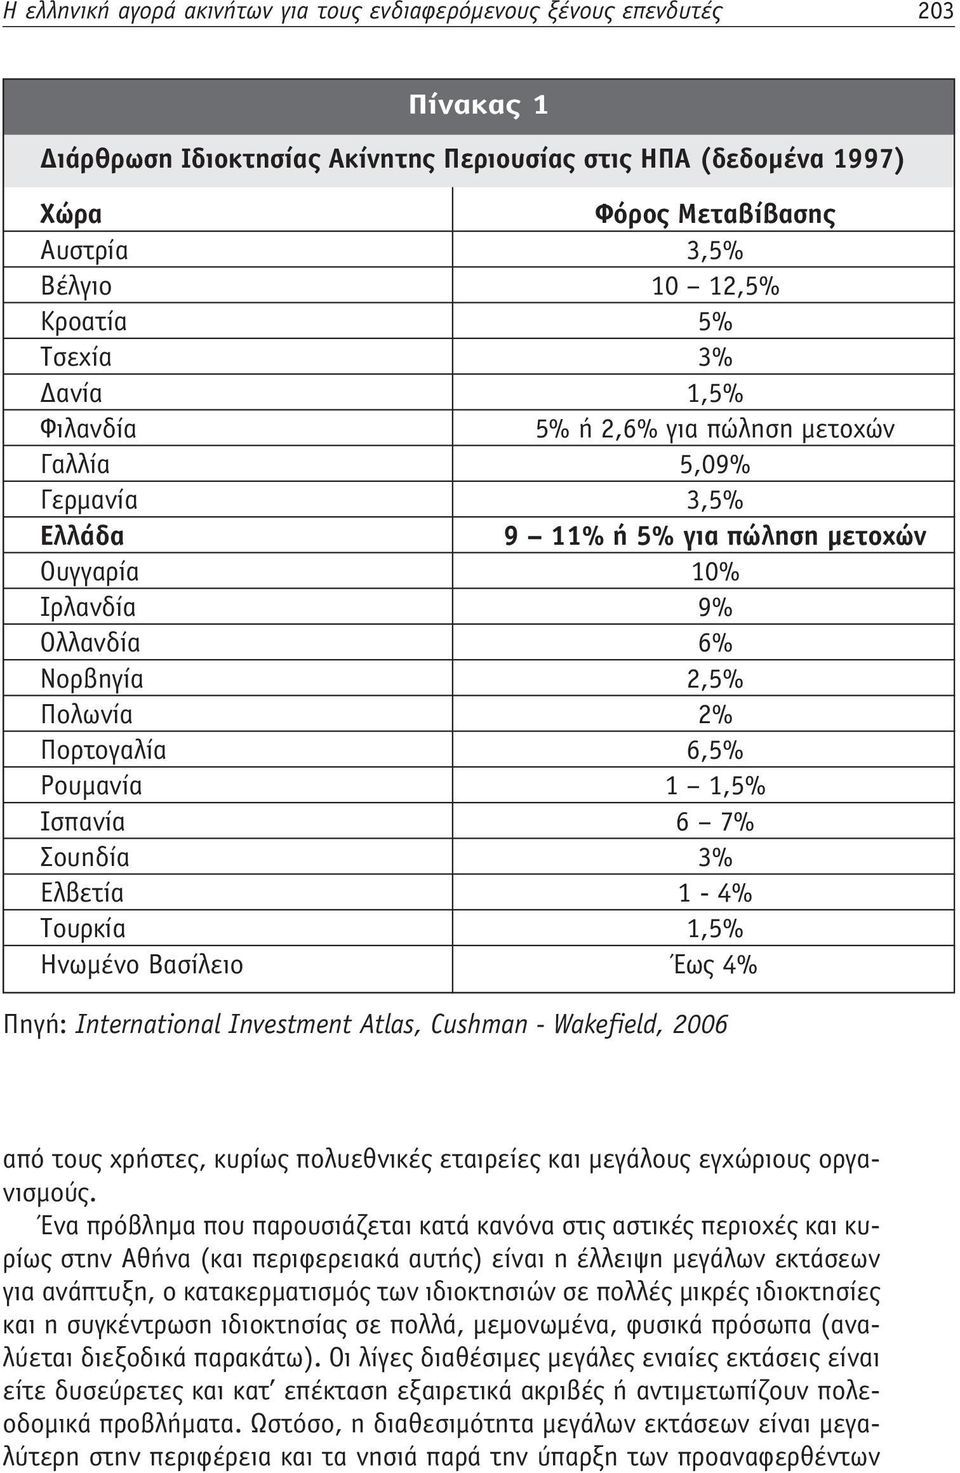 Πορτογαλία 6,5% Ρουμανία 1 1,5% Ισπανία 6 7% Σουηδία 3% Ελβετία 1-4% Τουρκία 1,5% Ηνωμένο Βασίλειο Έως 4% Πηγή: International Investment Atlas, Cushman - Wakefield, 2006 από τους χρήστες, κυρίως